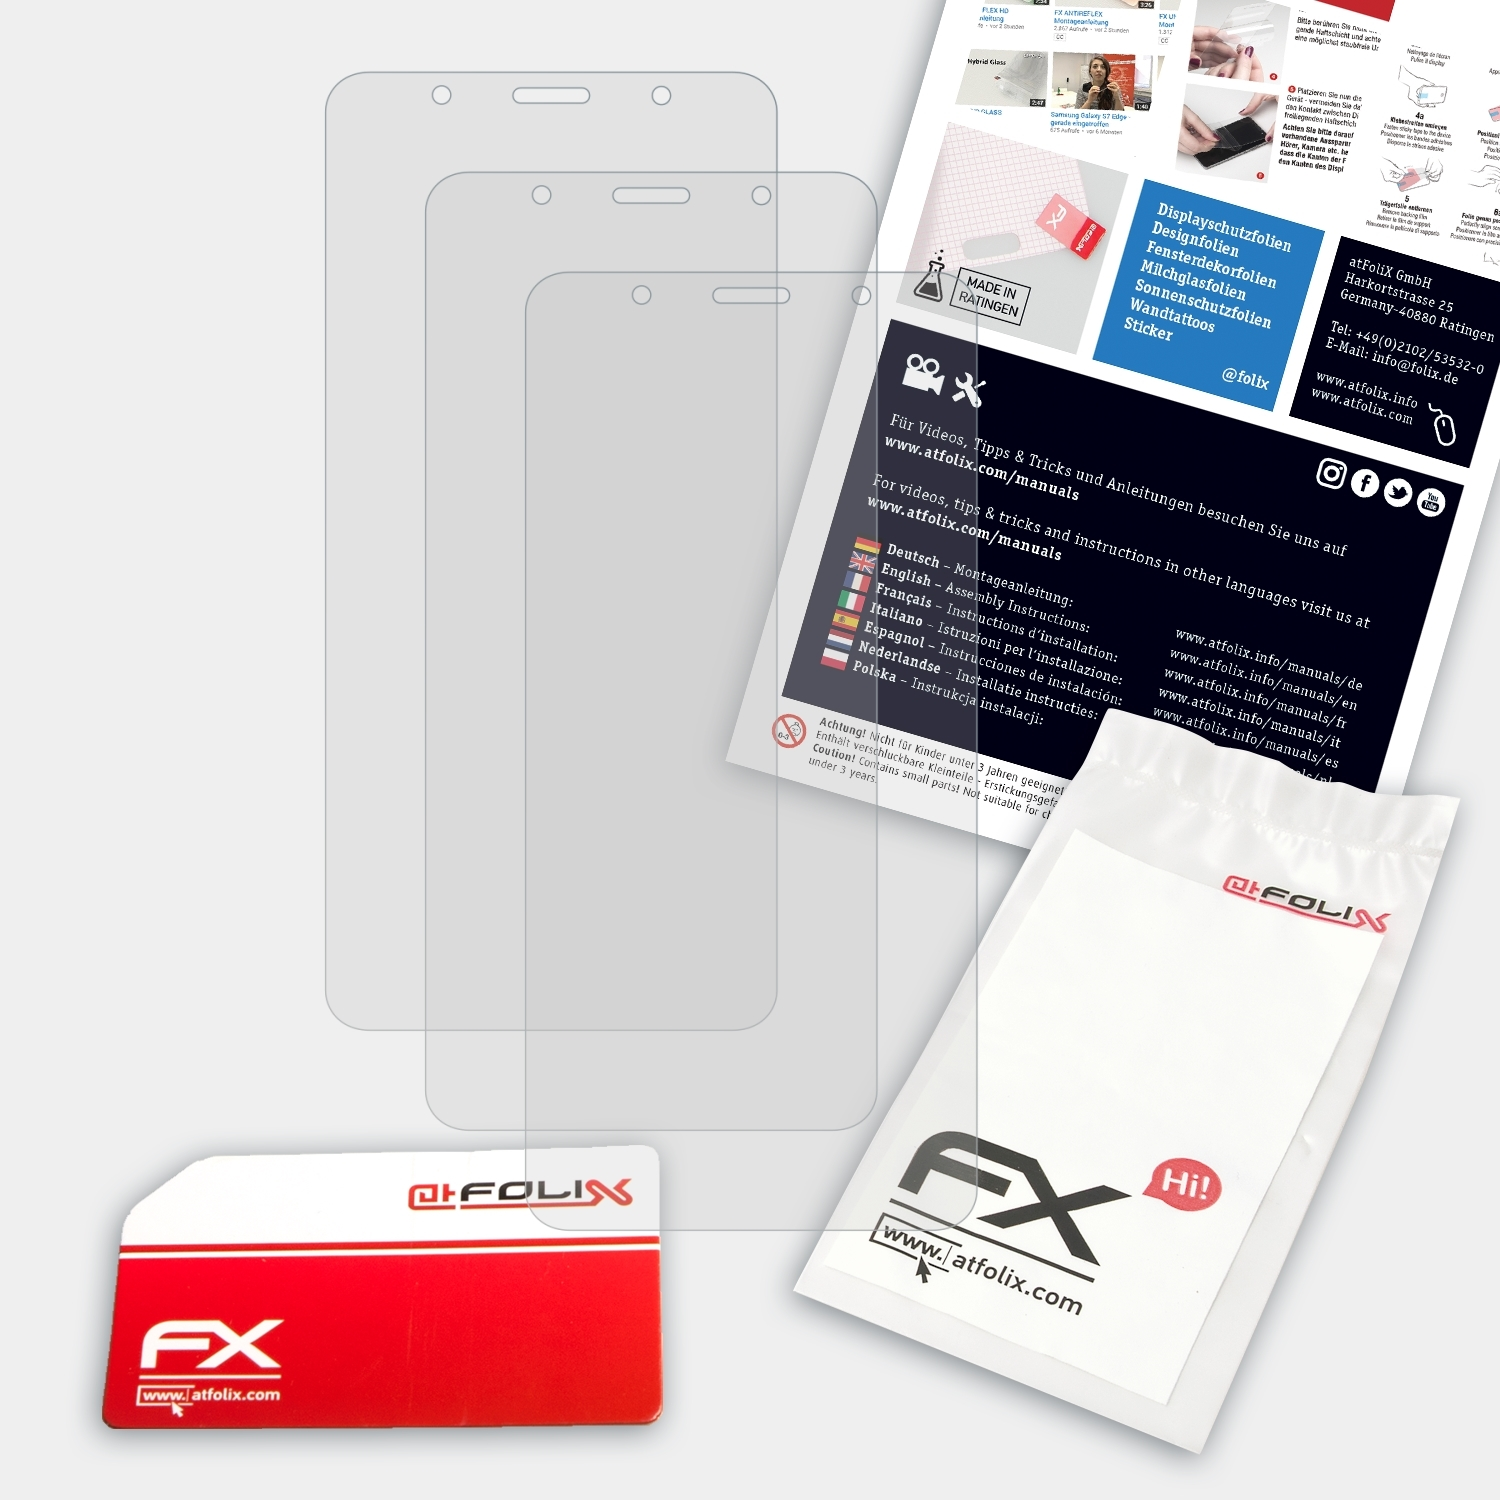 ATFOLIX 3x FX-Antireflex Displayschutz(für Alcatel 3C (2019))